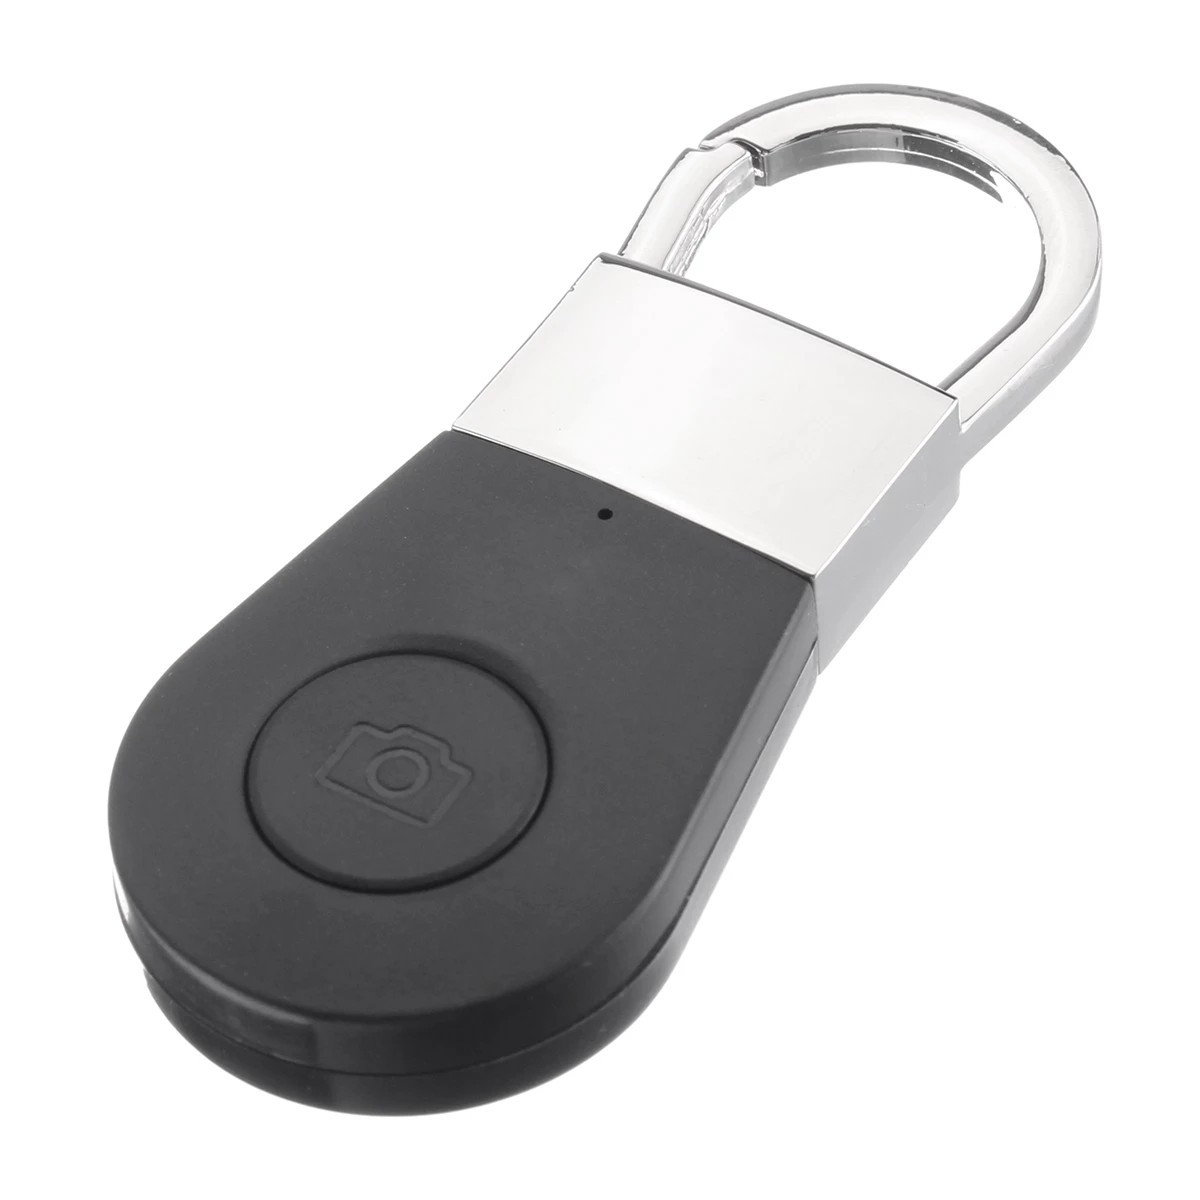 Sleutelzoeker - Bluetooth-zoeker voor sleutels, mobiele telefoon, enz